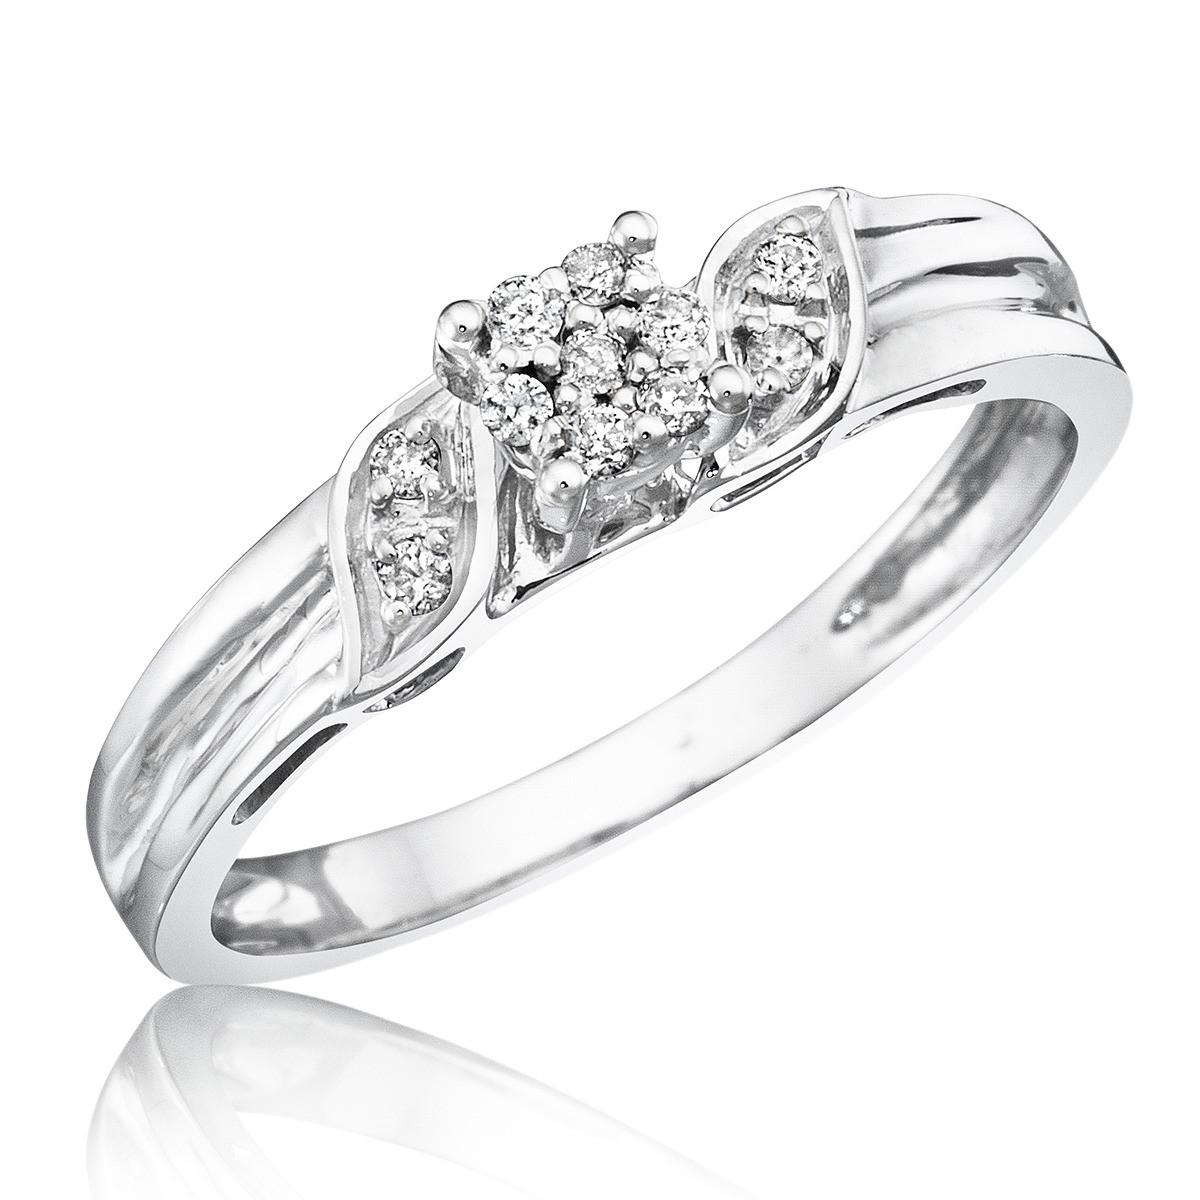 White Gold Diamond Rings For Women
 1 10 Carat T W Diamond Women s Engagement Ring 10K White